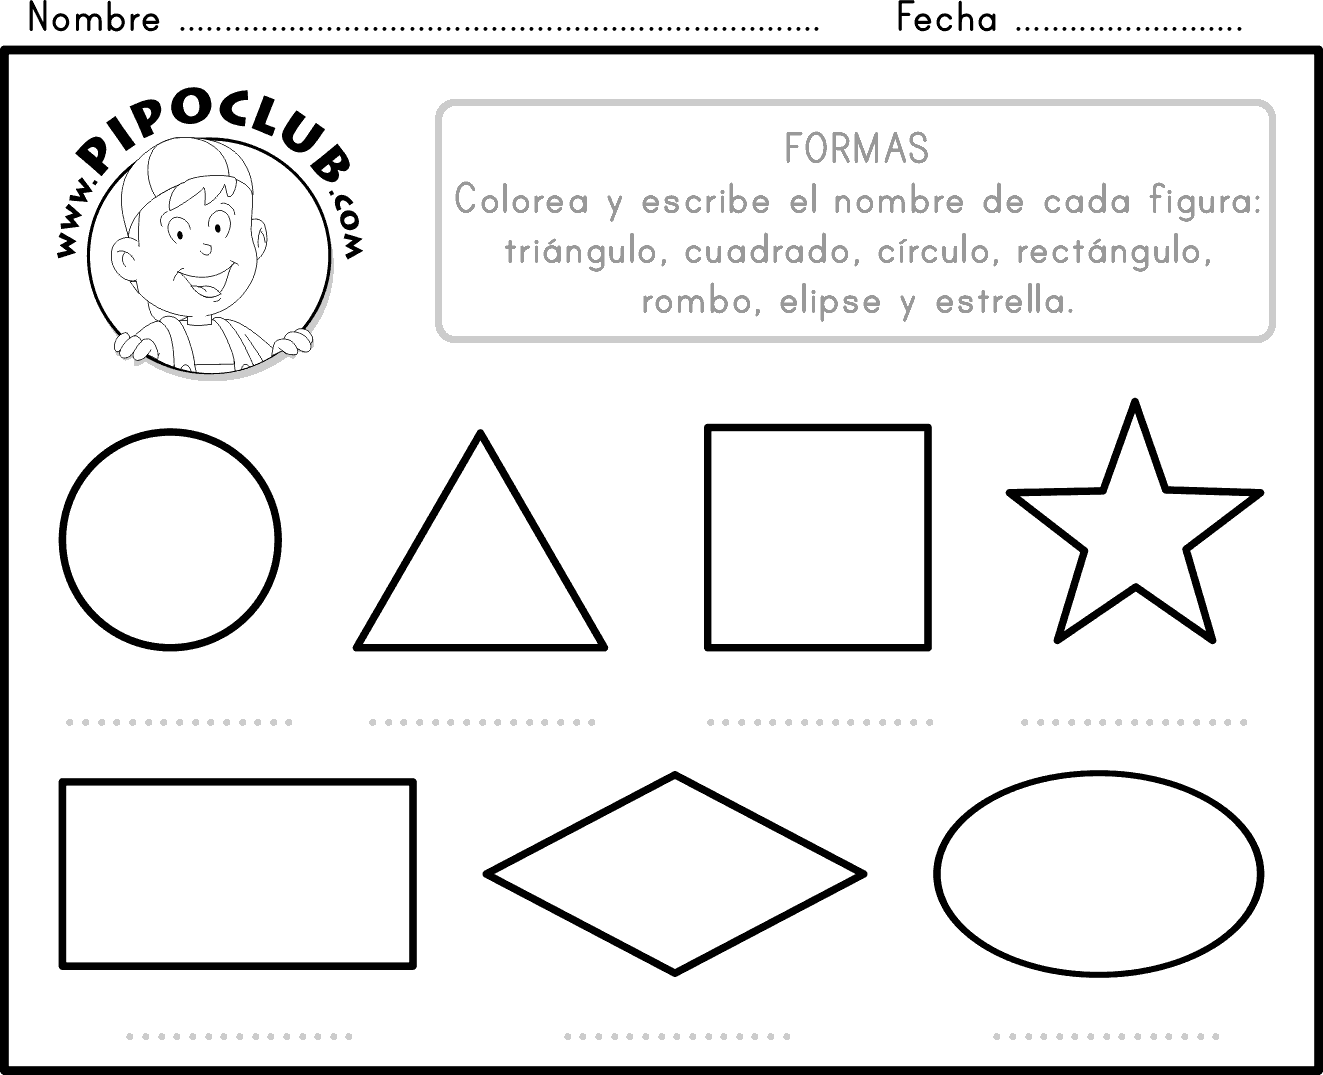 Ejercicios de figuras geometricas para preescolar - Imagui